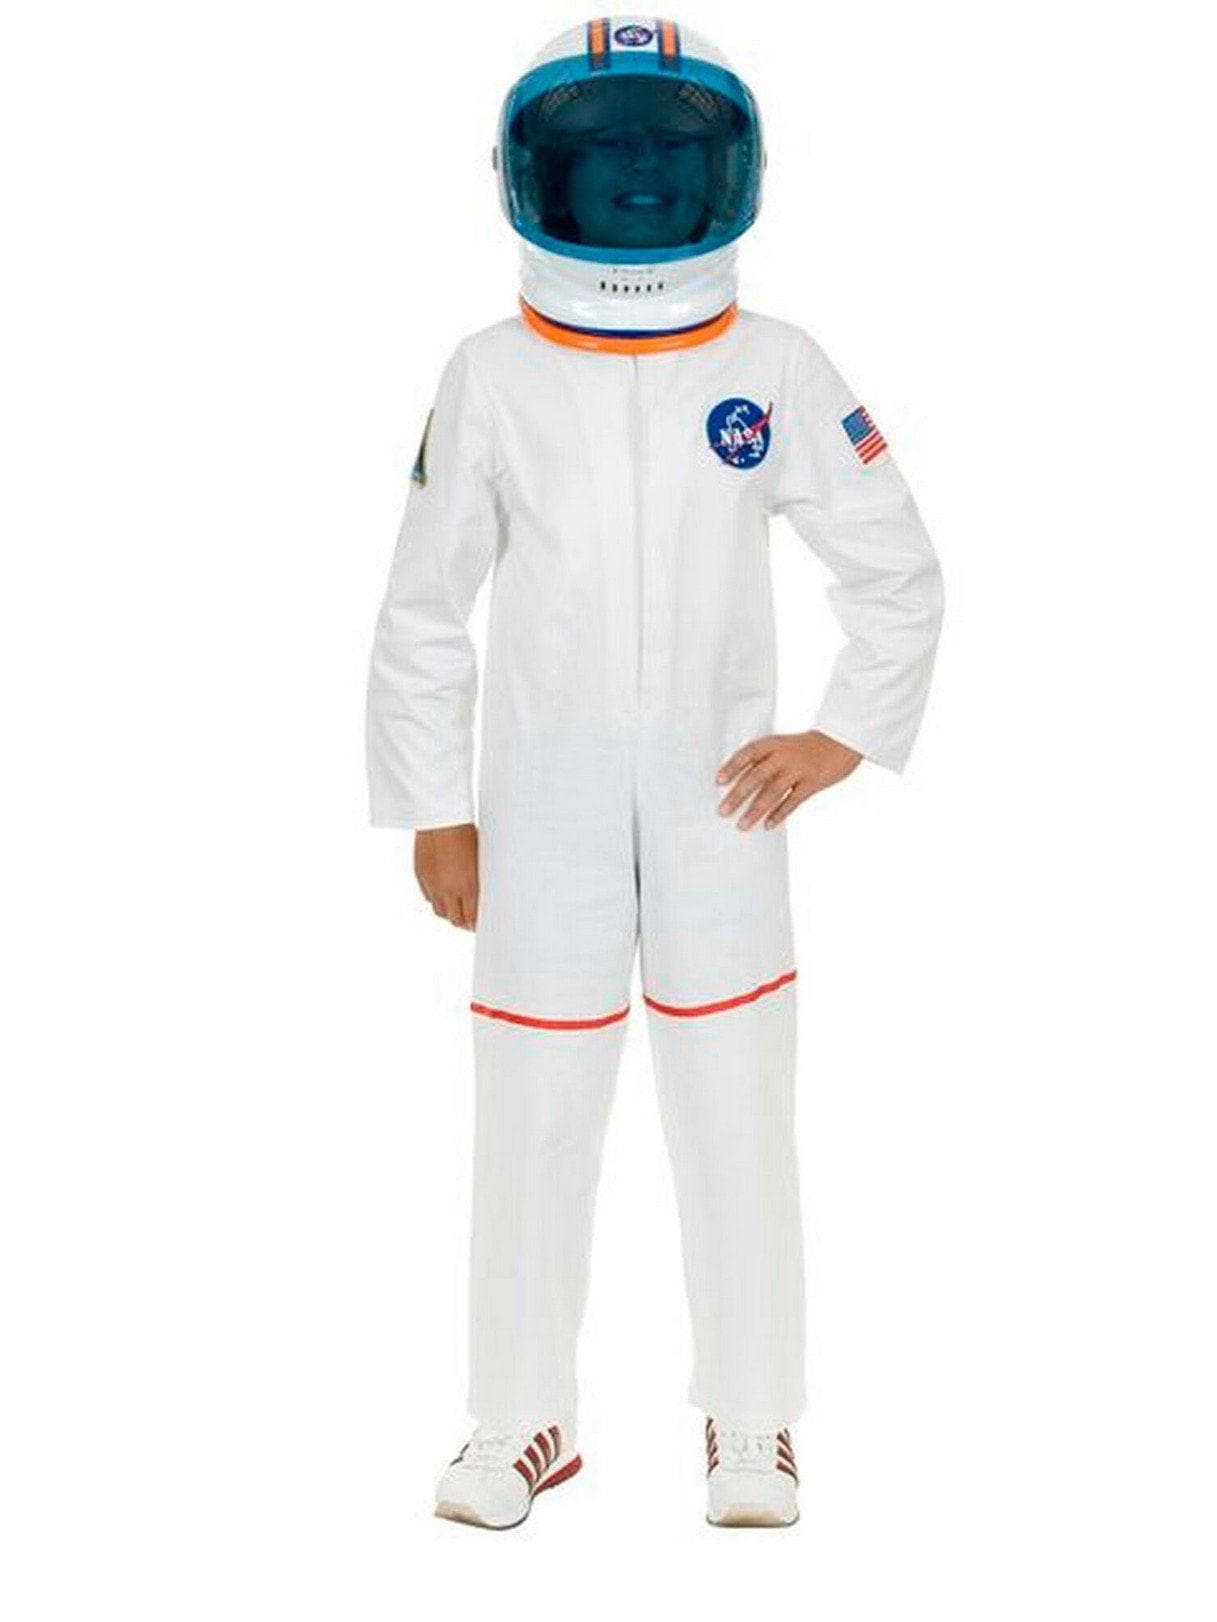 Kid's Astronaut Suit White Costume - costumes.com